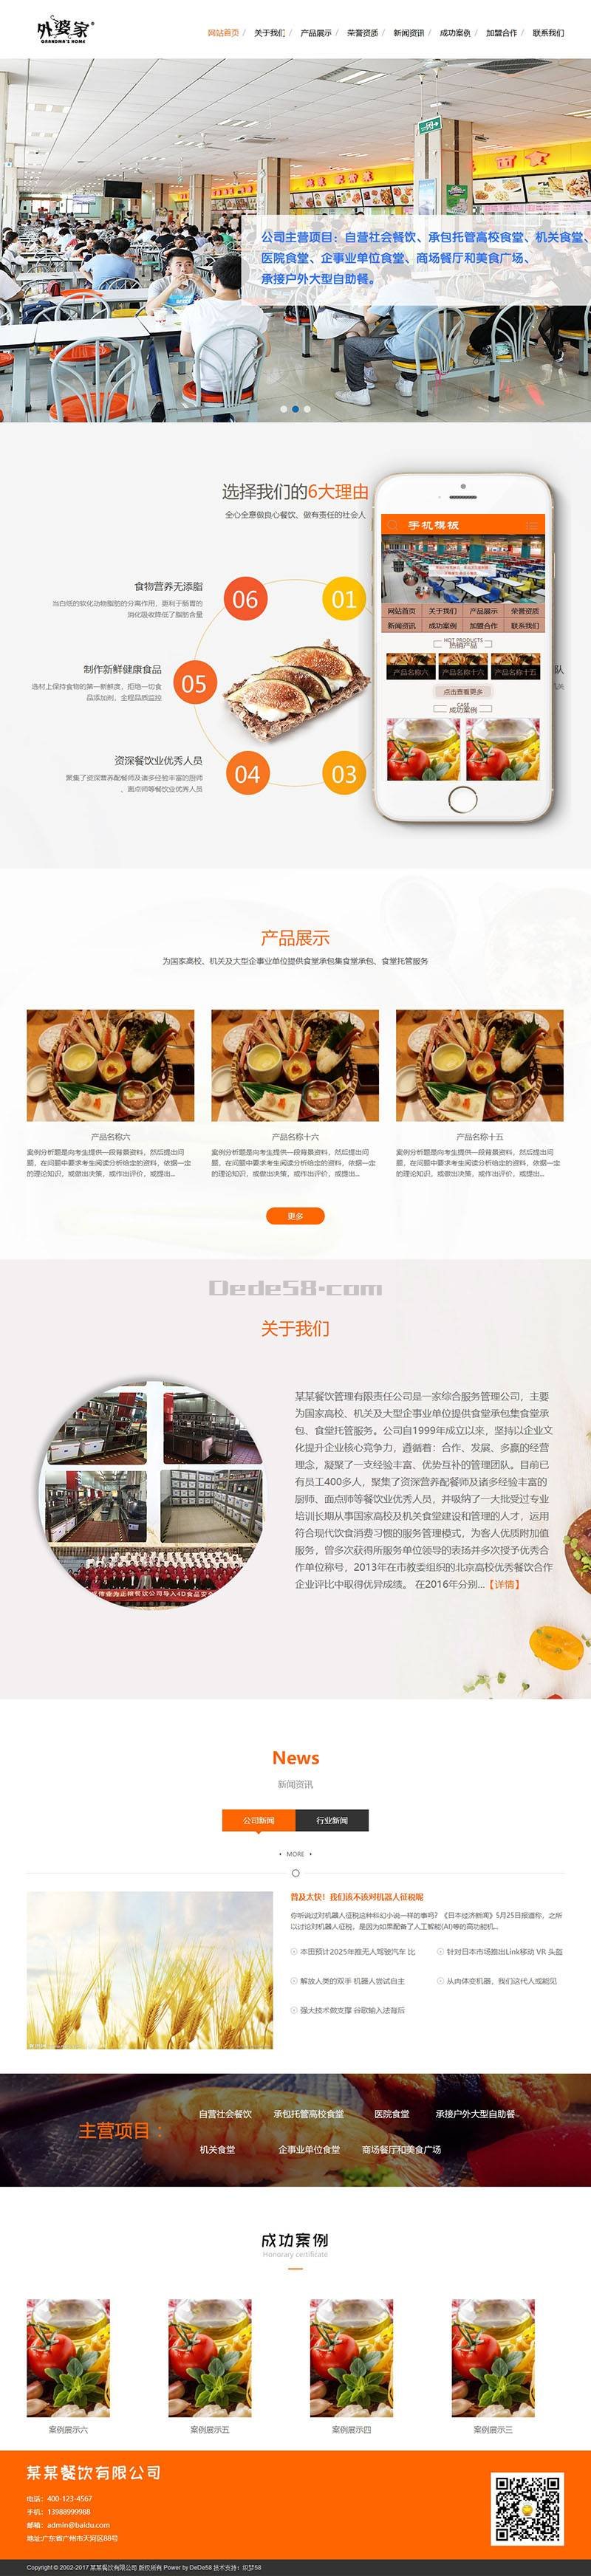 【网站建设】食堂承包餐饮服务管理类-seo顾问服务